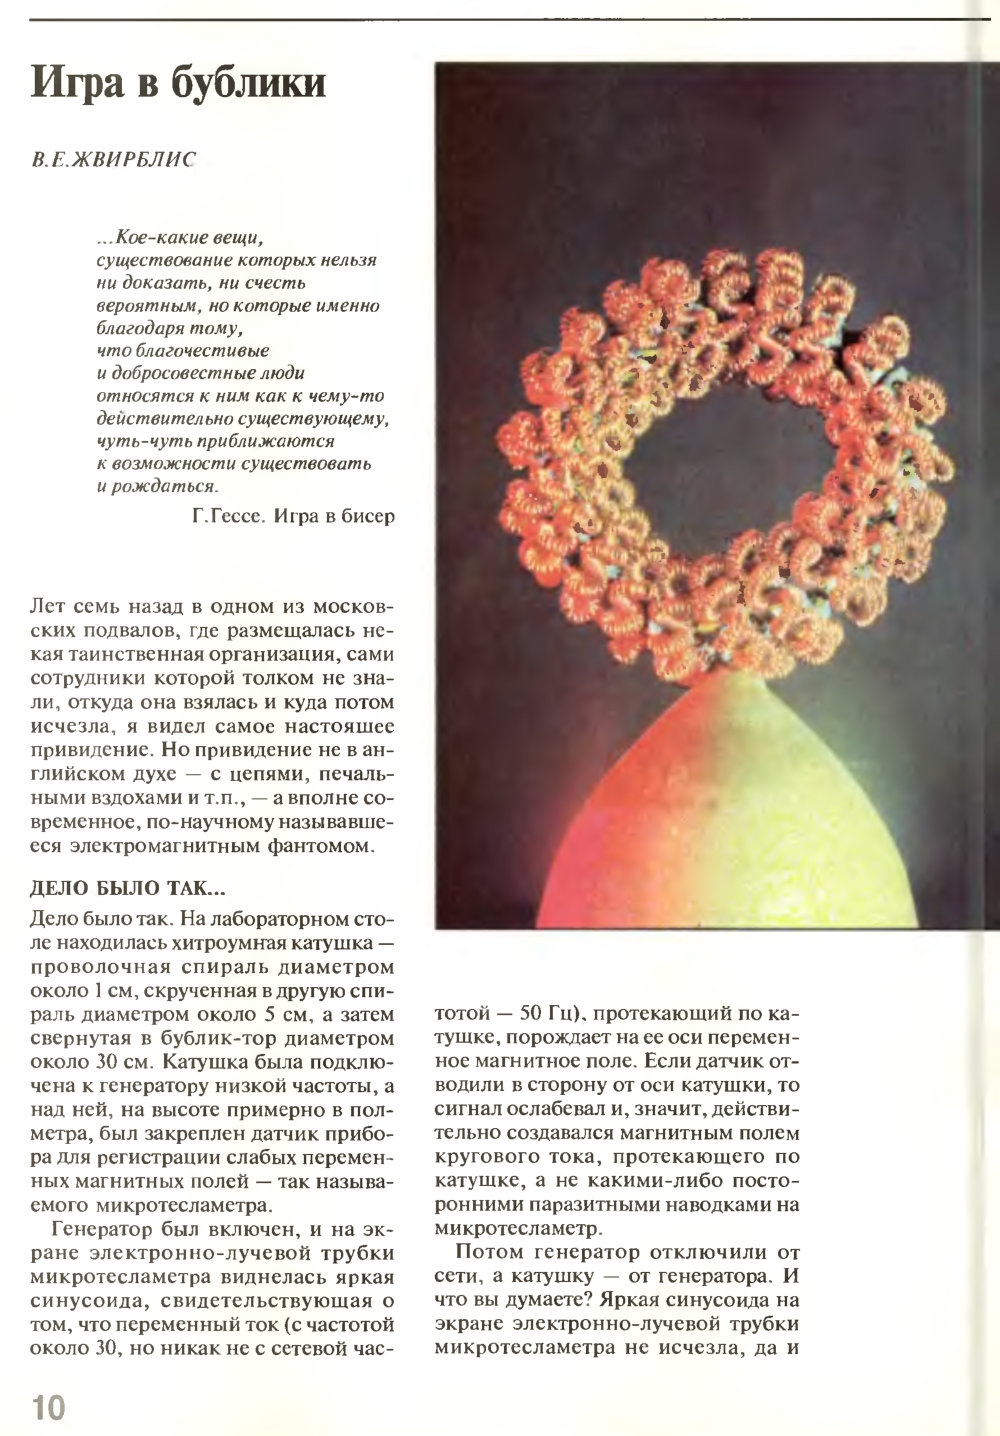 Игра в бублики. В.Е. Жвирблис. Химия и жизнь, 1995, №5, с.10-15. Фотокопия №1